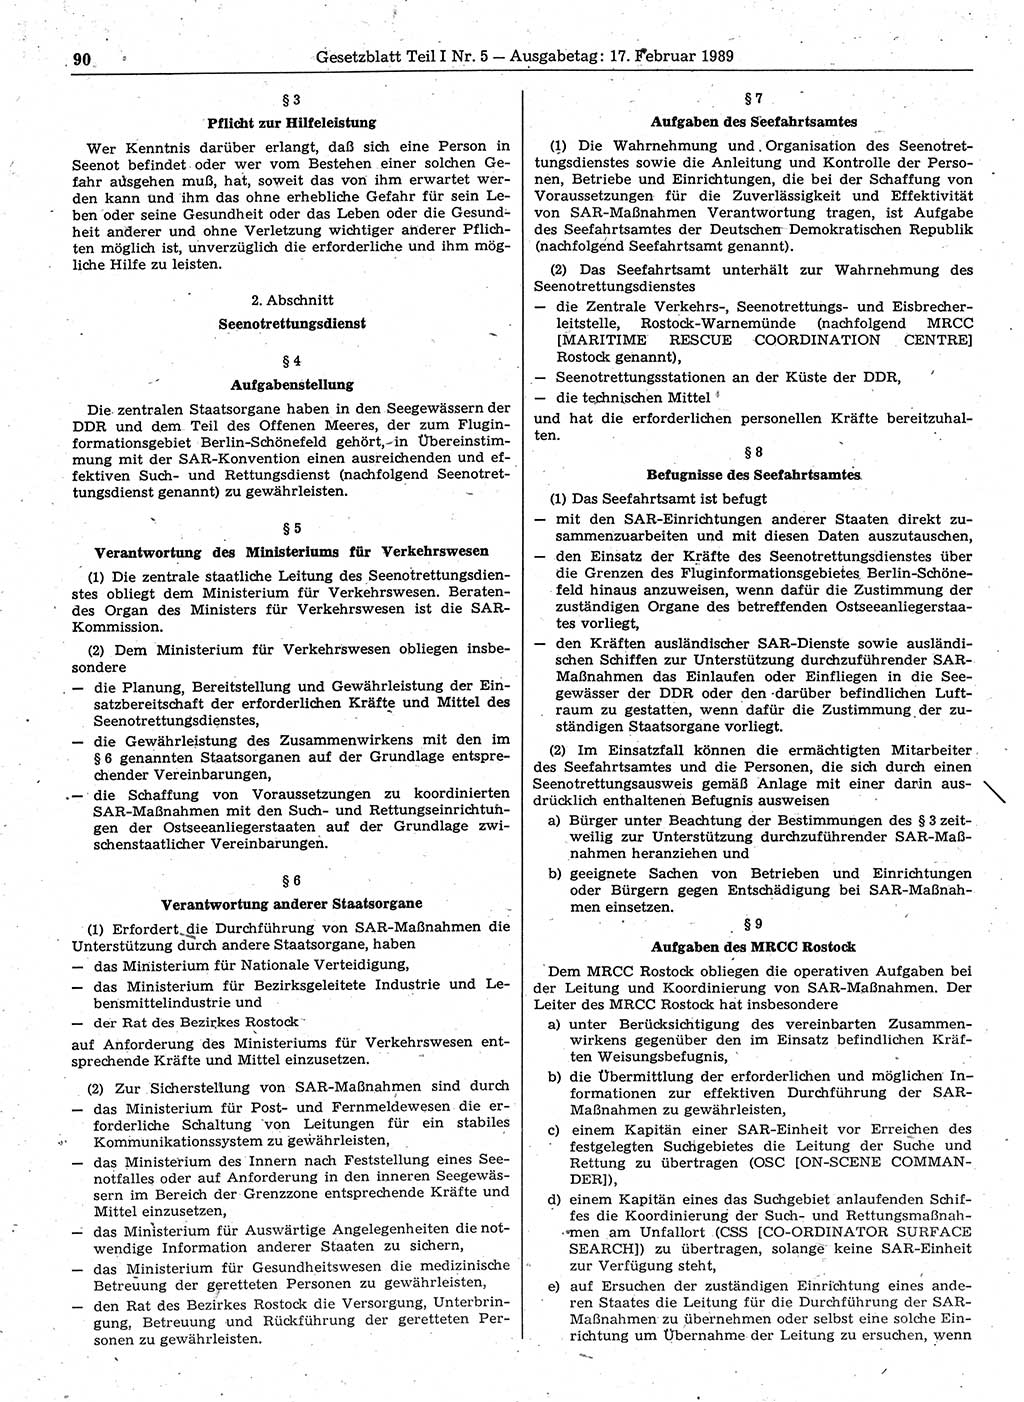 Gesetzblatt (GBl.) der Deutschen Demokratischen Republik (DDR) Teil Ⅰ 1989, Seite 90 (GBl. DDR Ⅰ 1989, S. 90)